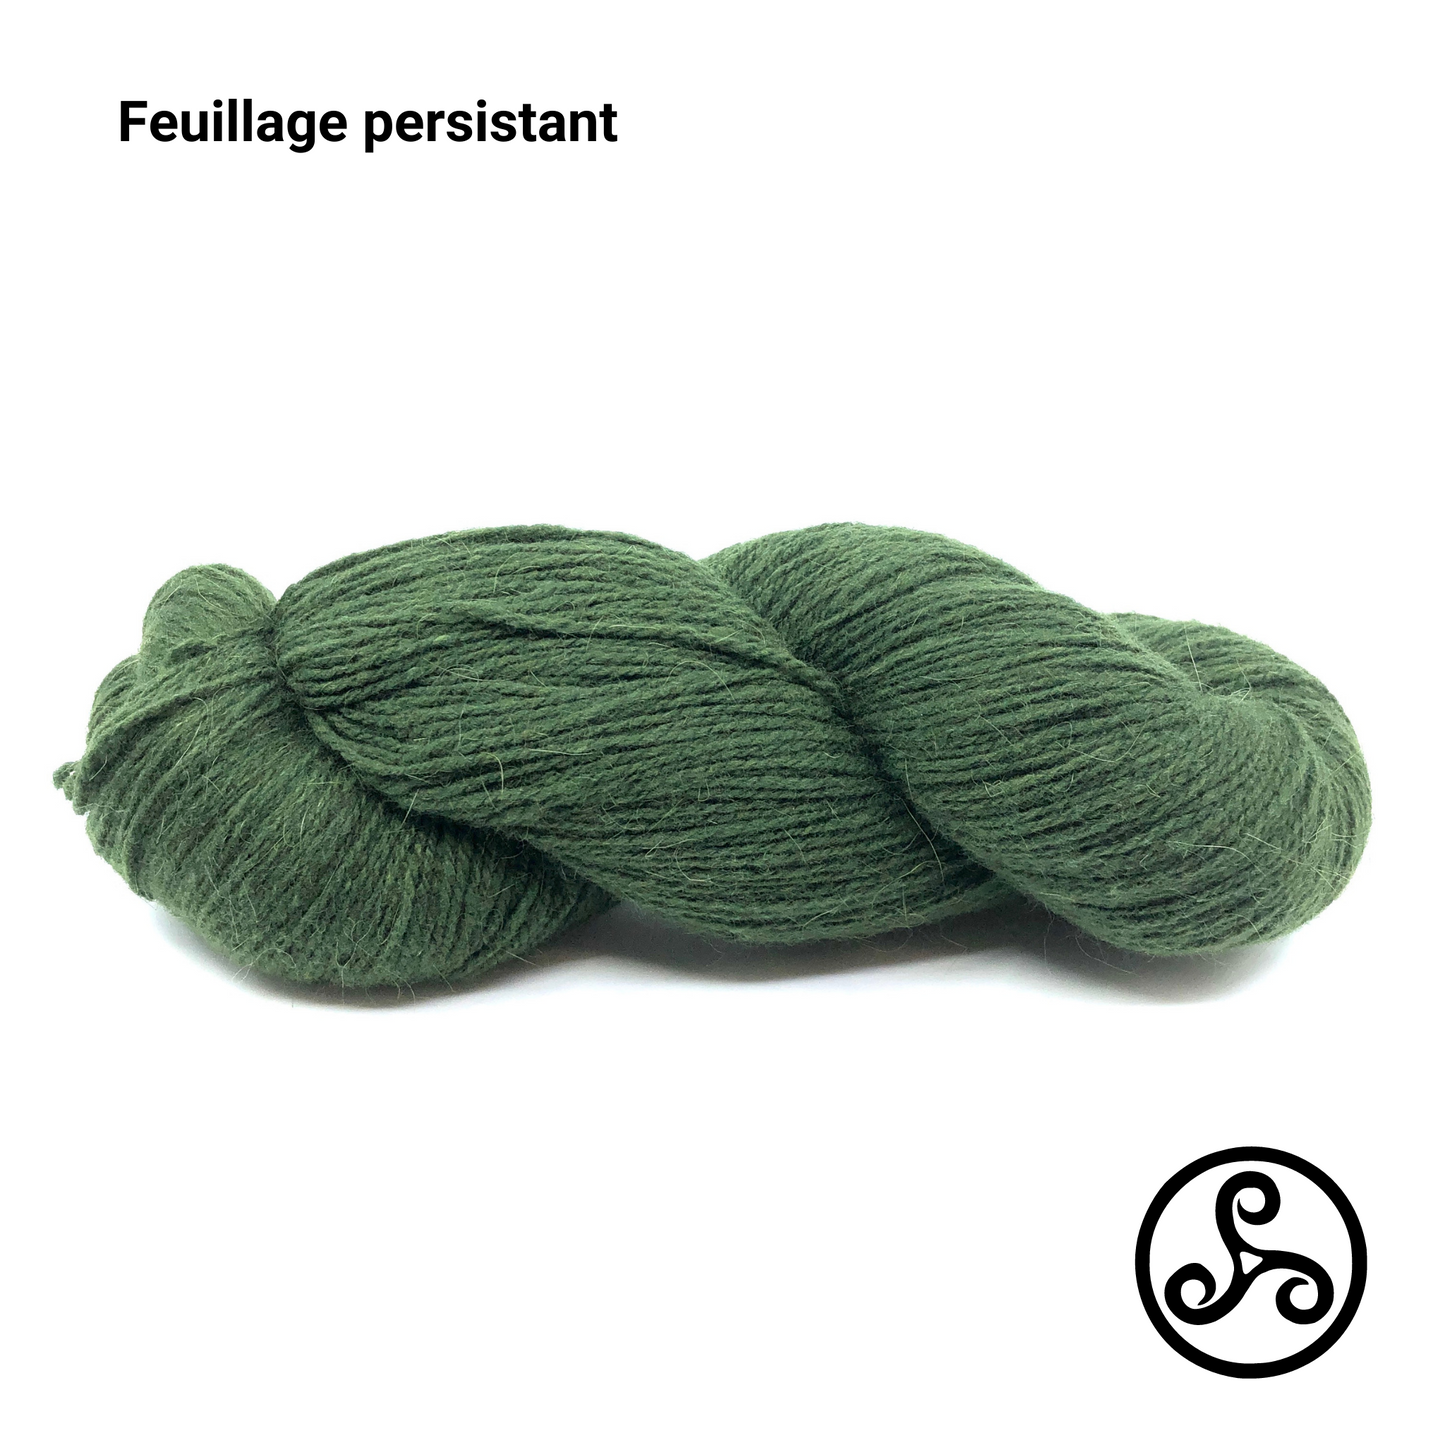 Bouclelaine - French Merino and Angora wool